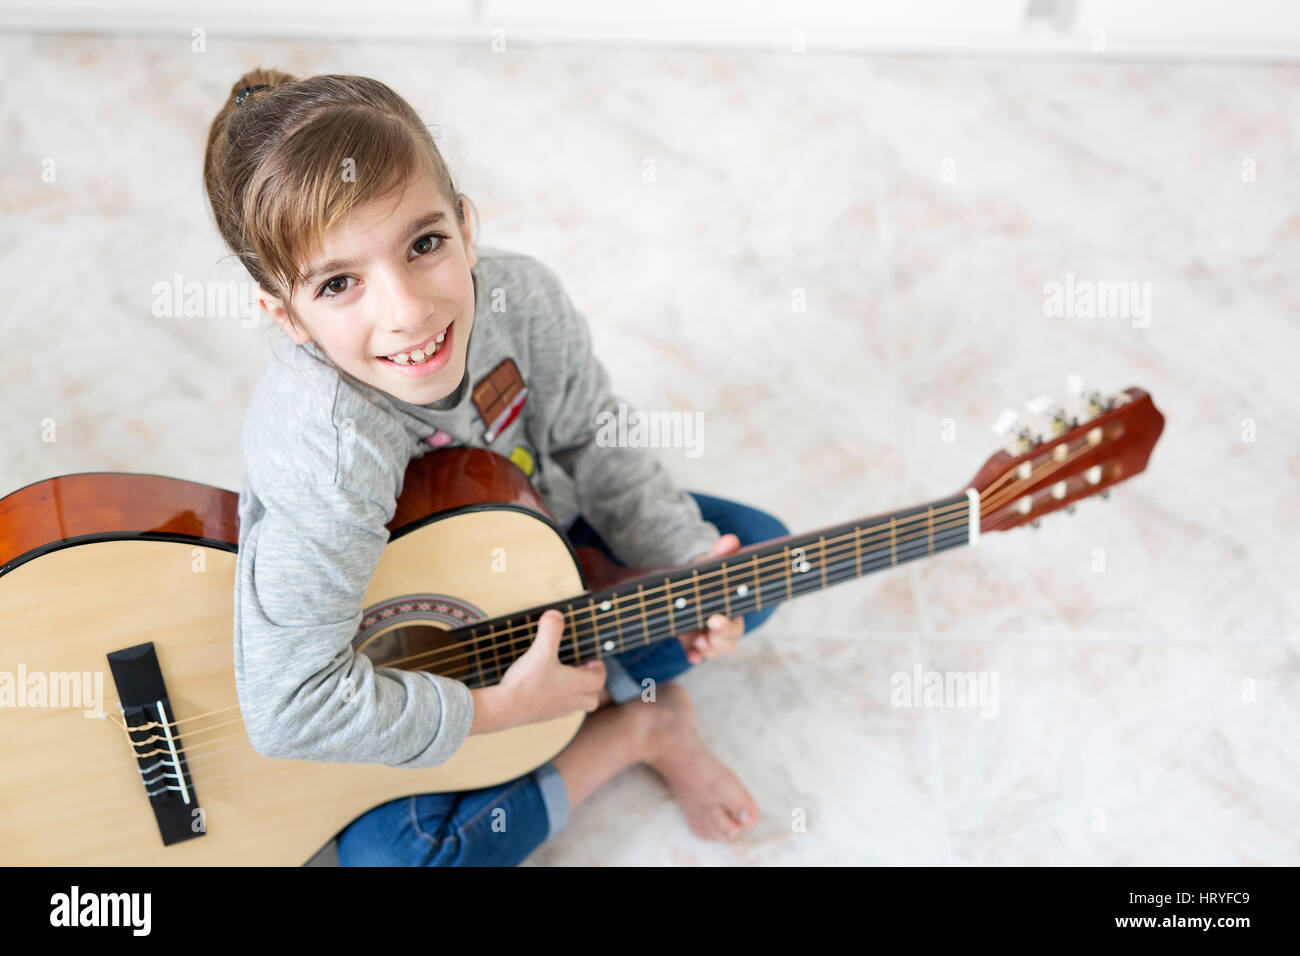 9 Jahre altes Mädchen lernen, Gitarre zu spielen. Horizontal mit Lichteinfall durch ein Fenster geschossen. Stockfoto